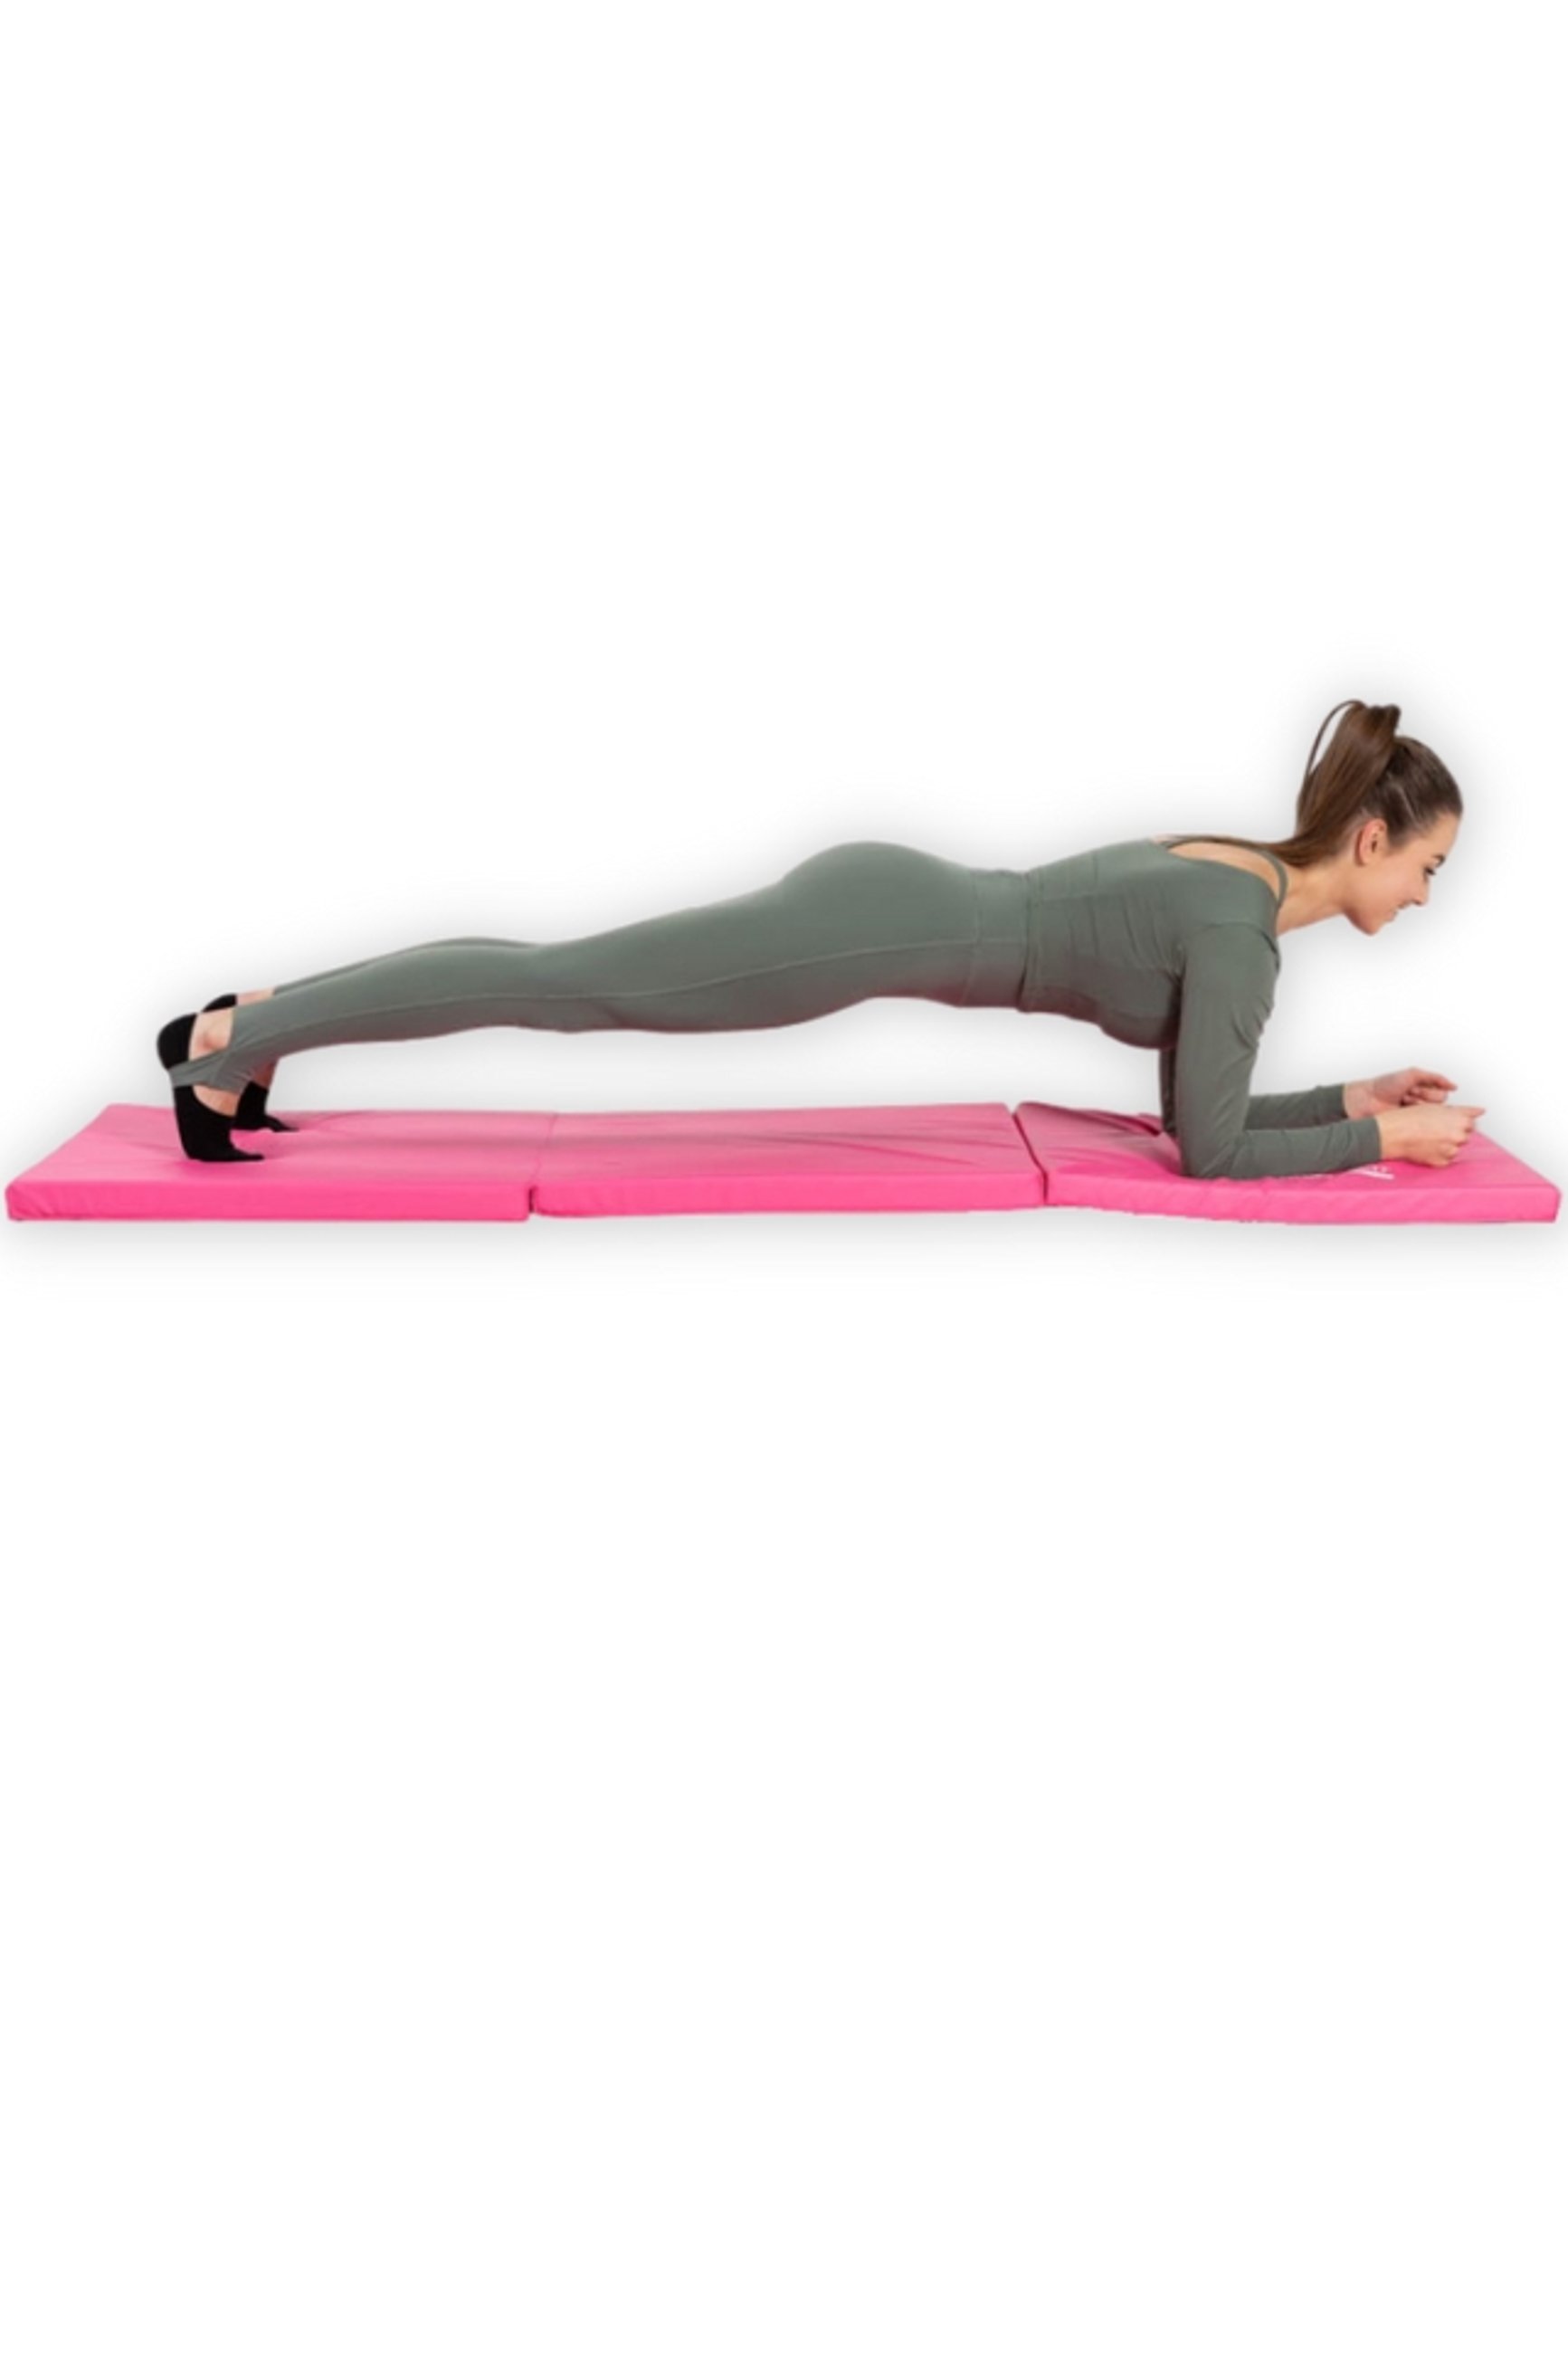 plank na materacu gimnastycznym różowym Hop-Sport